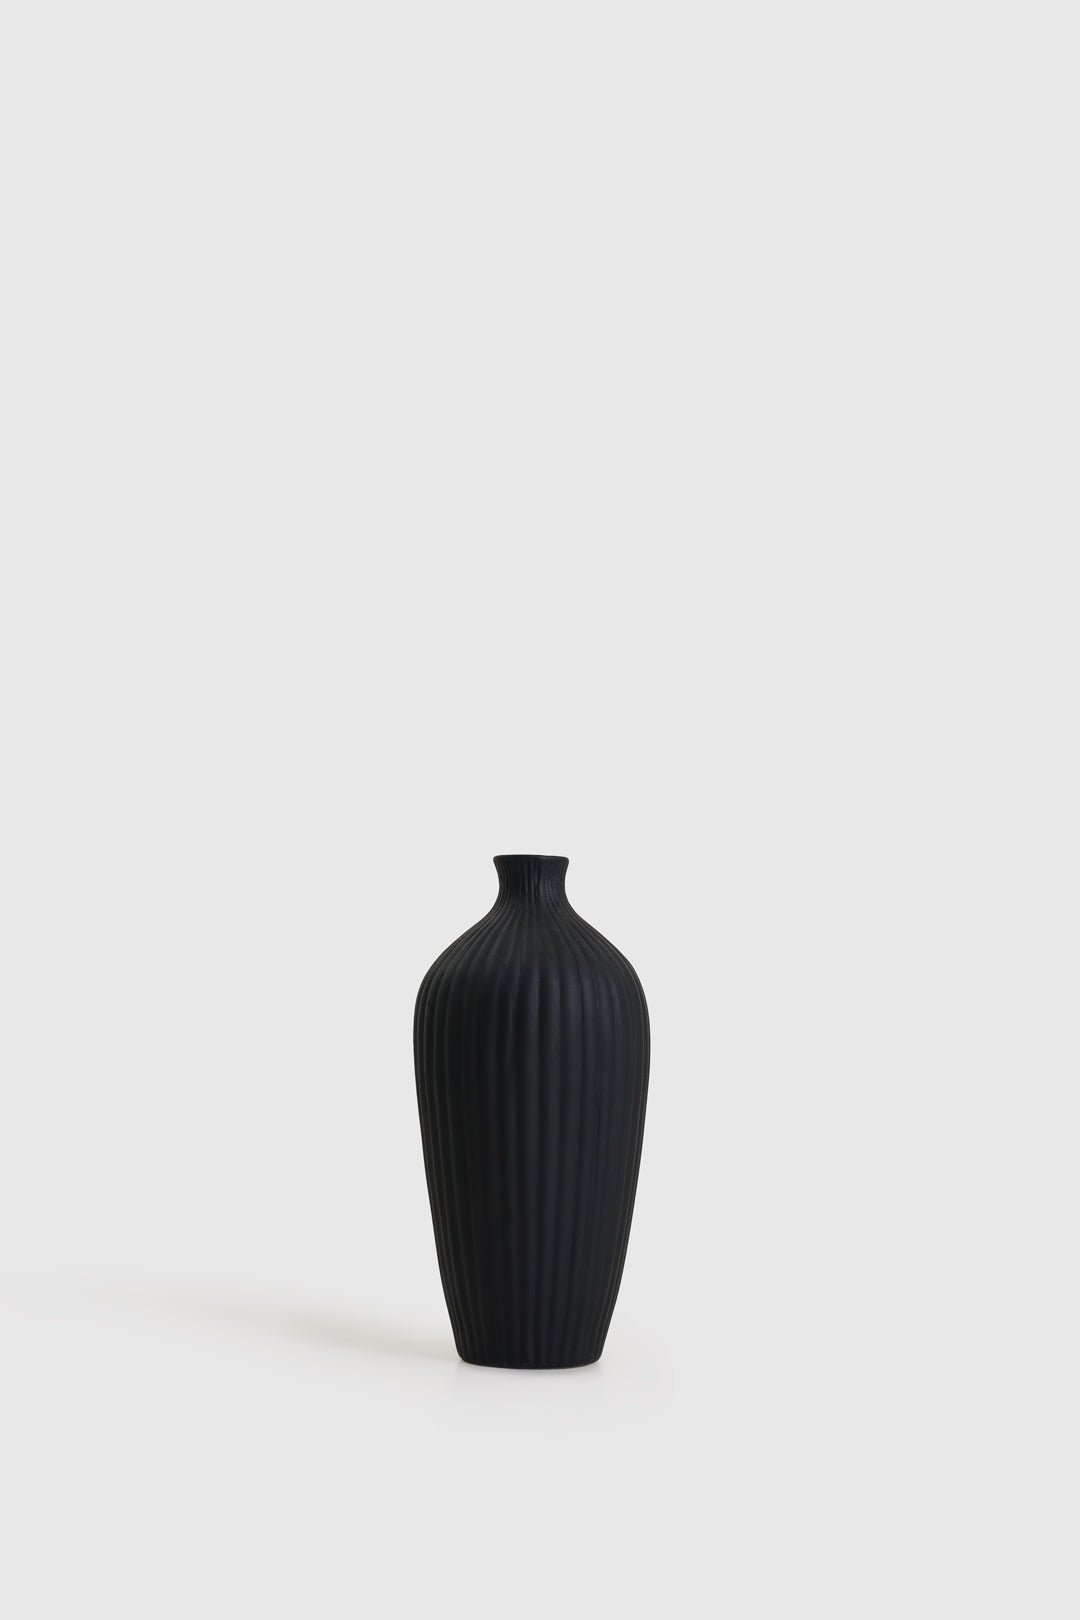 Saroi Vase Black 8 inch